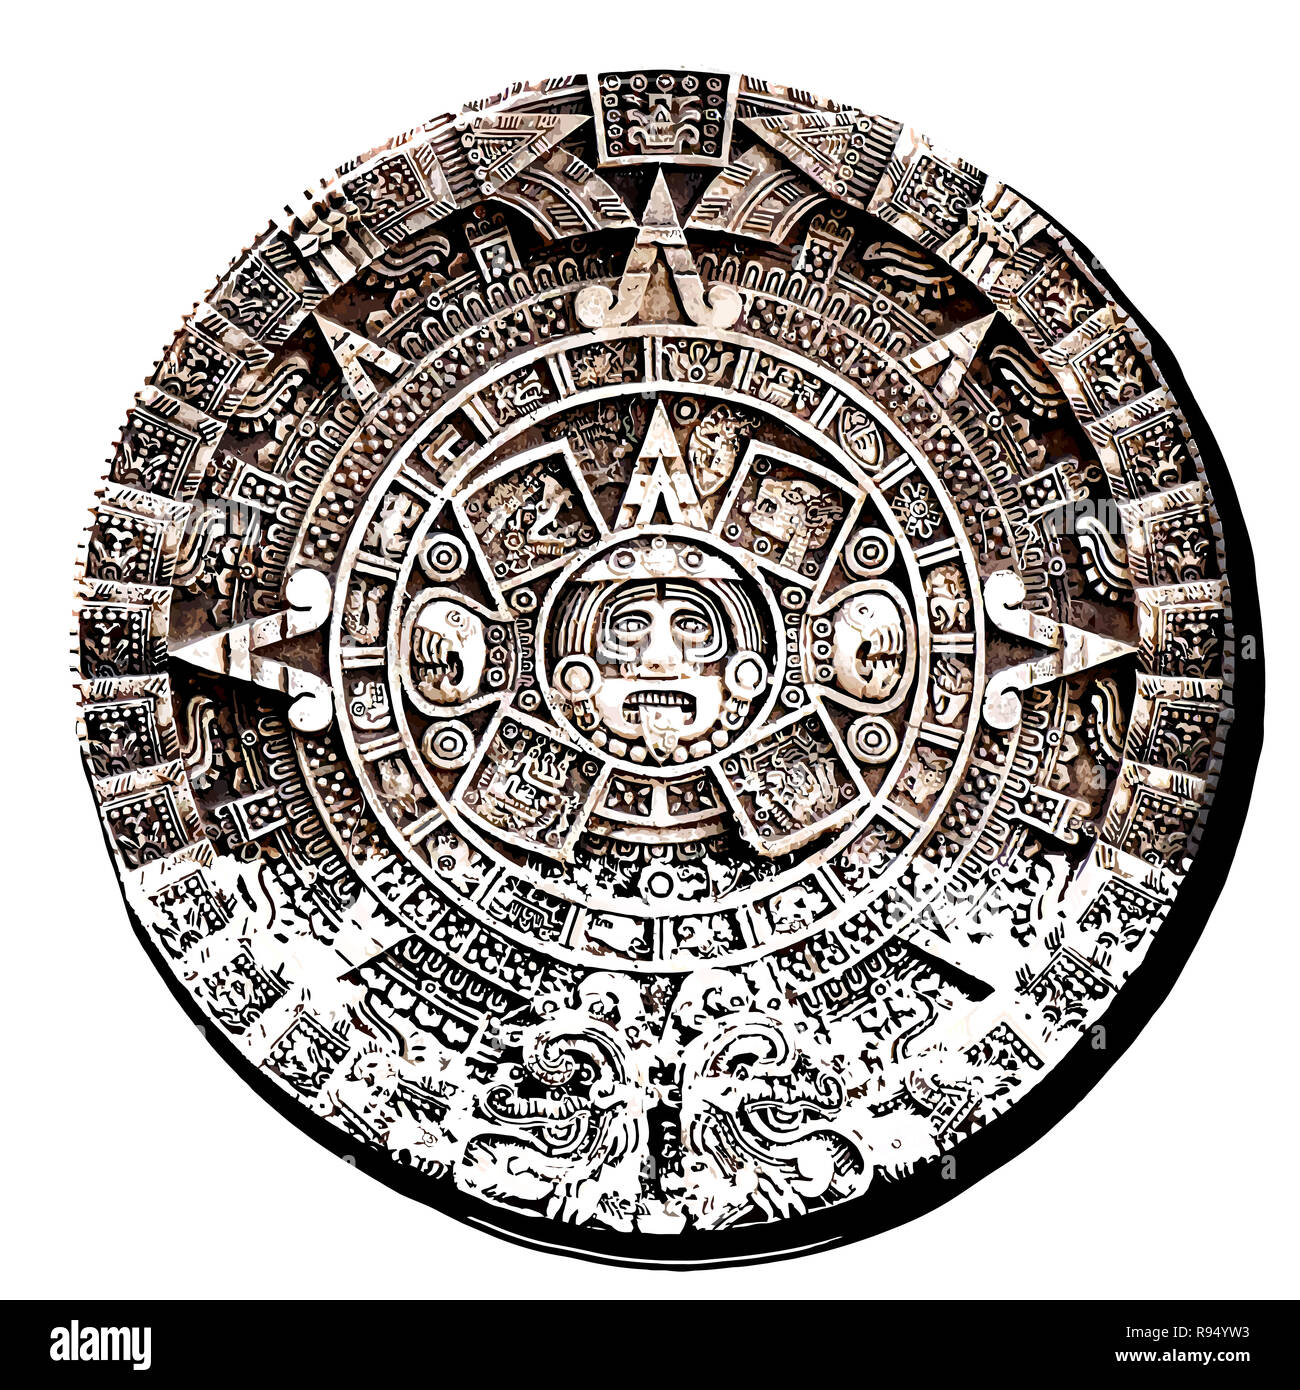 Сюжет произведения календарь майя. Календарь Майя вектор. Ацтекский календарь астрономия. Календарь ацтеков вектор. Конец календаря Майя.